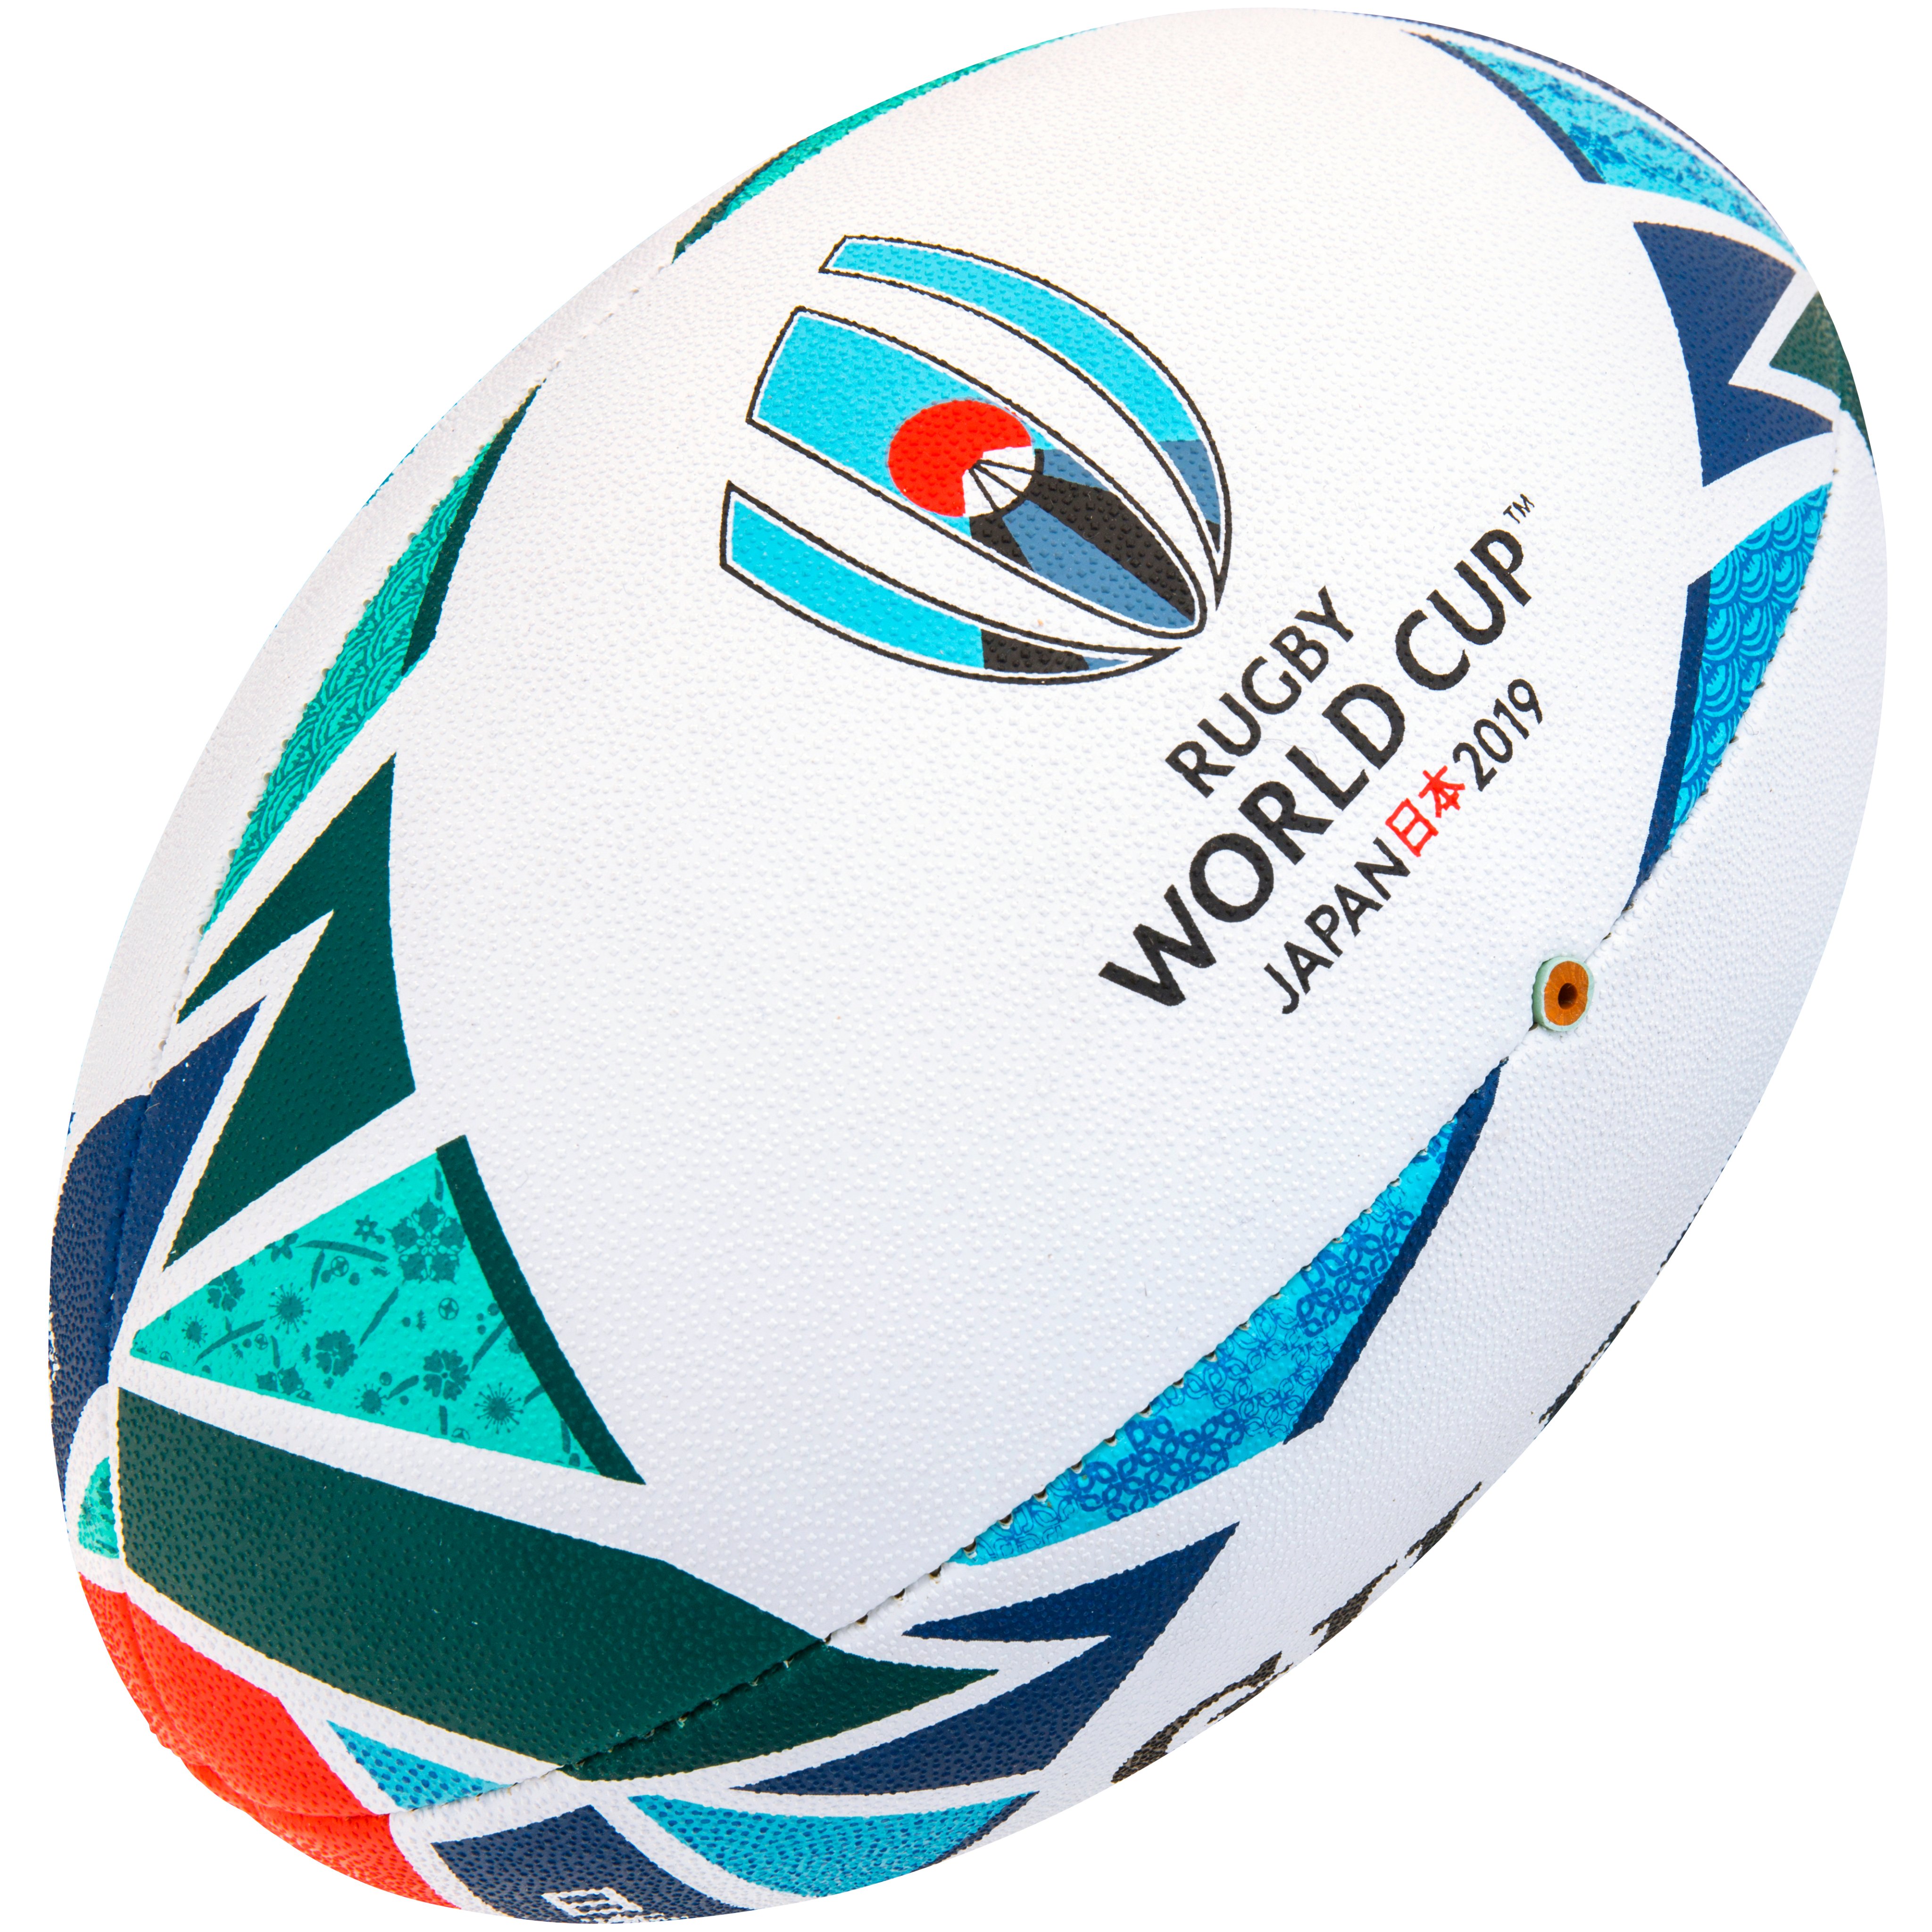 ラグビーワールドカップ こちらは Rwc19 の公式ボール ところどころに和柄がデザインされています ちなみに ラグビーボールの絵文字はこれ アメフトボールの絵文字はこれ T Co Subowjcxtt Twitter